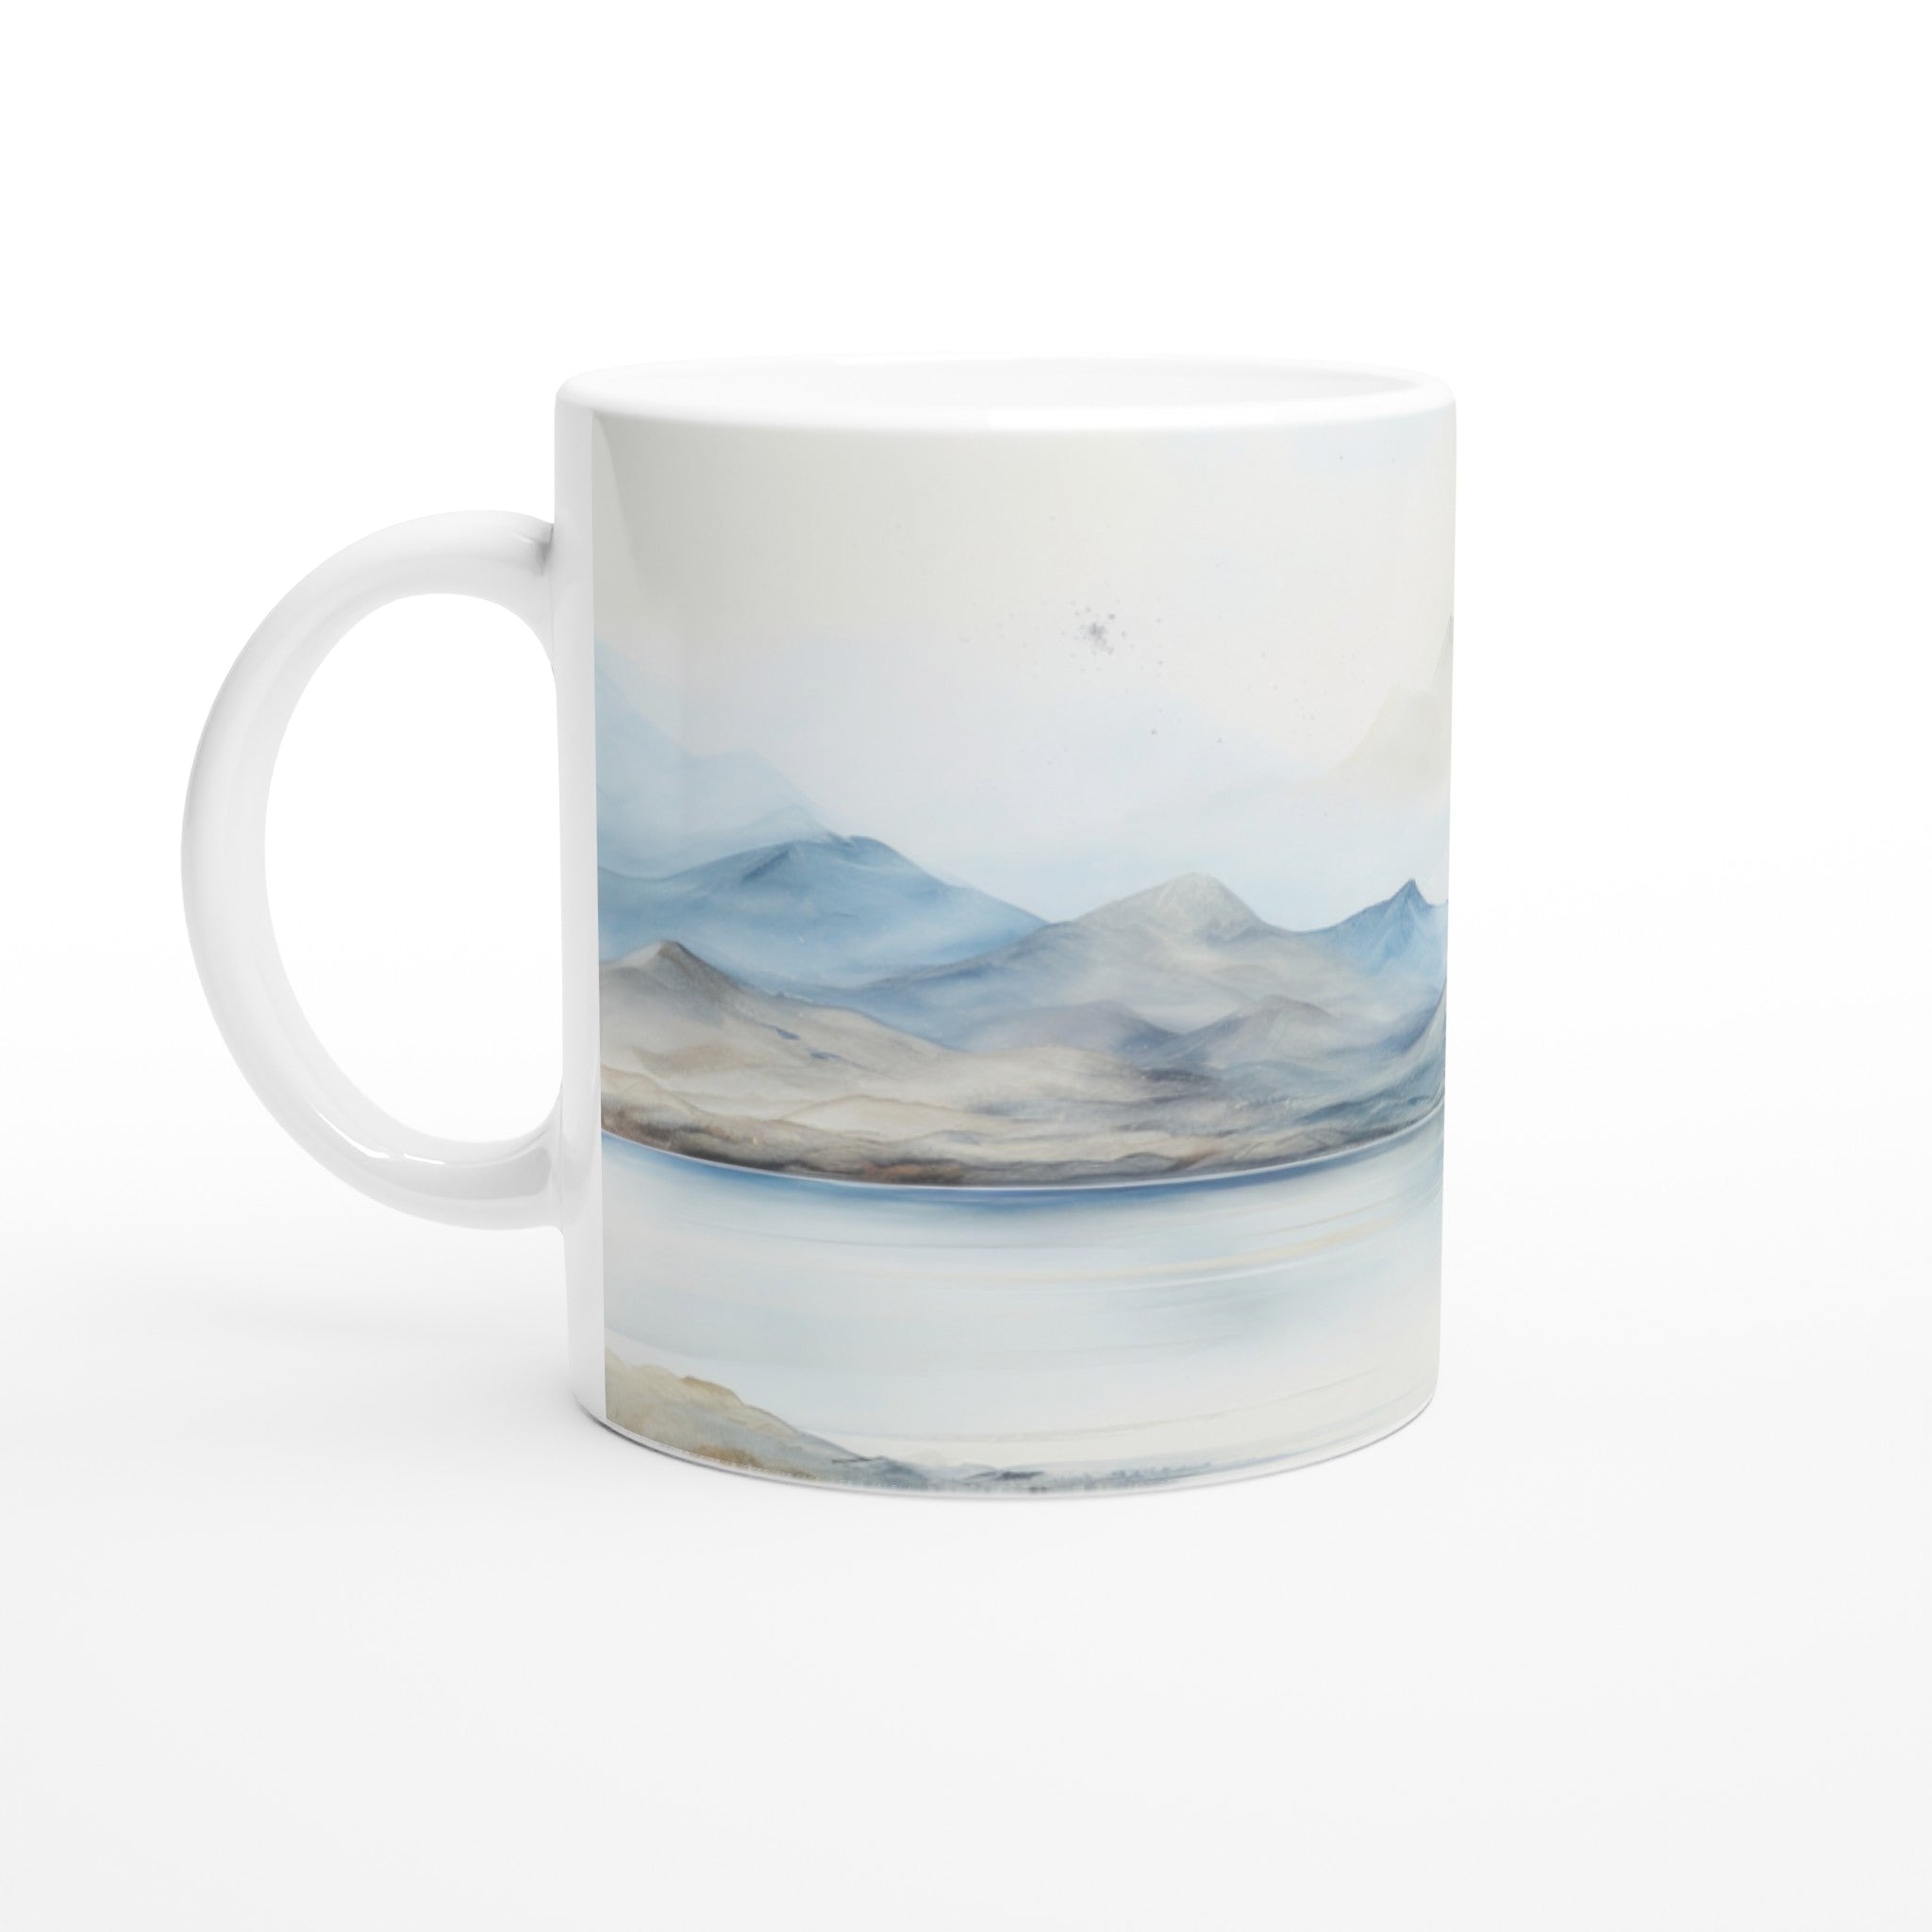 Limited Edition Mug - Iceland landscape